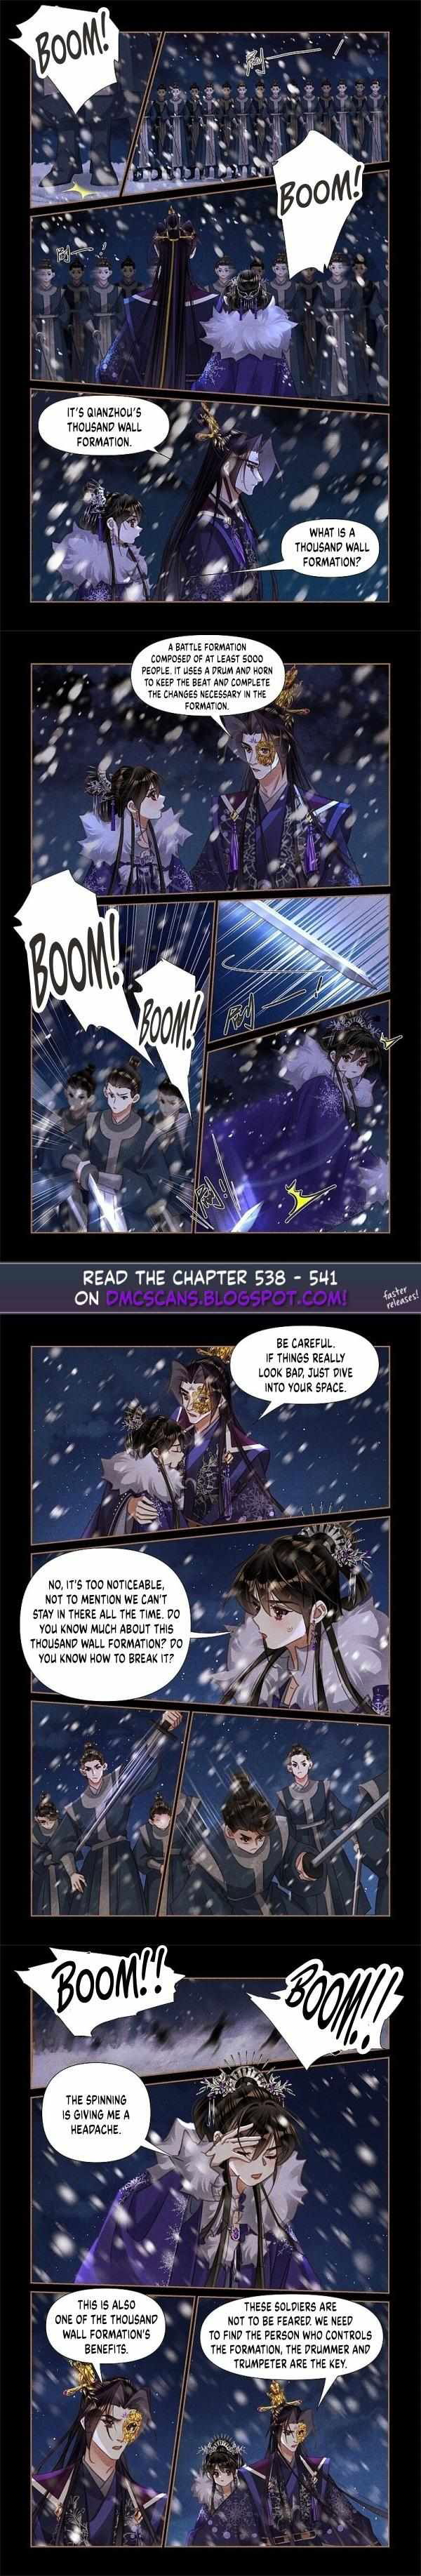 Shen Yi Di Nu Chapter 537 page 3